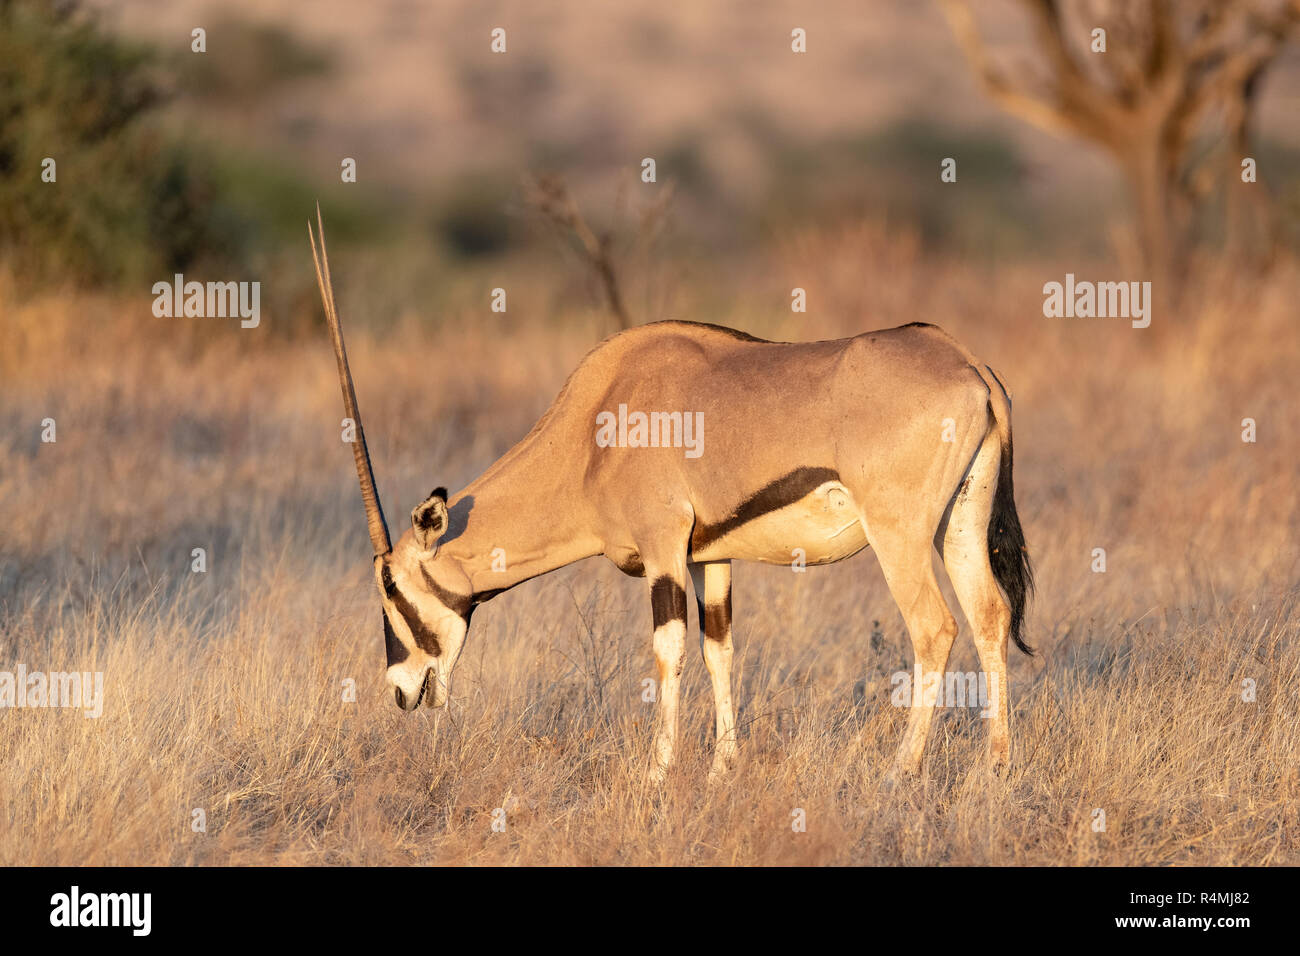 Oryx de beisa commun (Oryx beisa) au Kenya, l'Afrique Banque D'Images